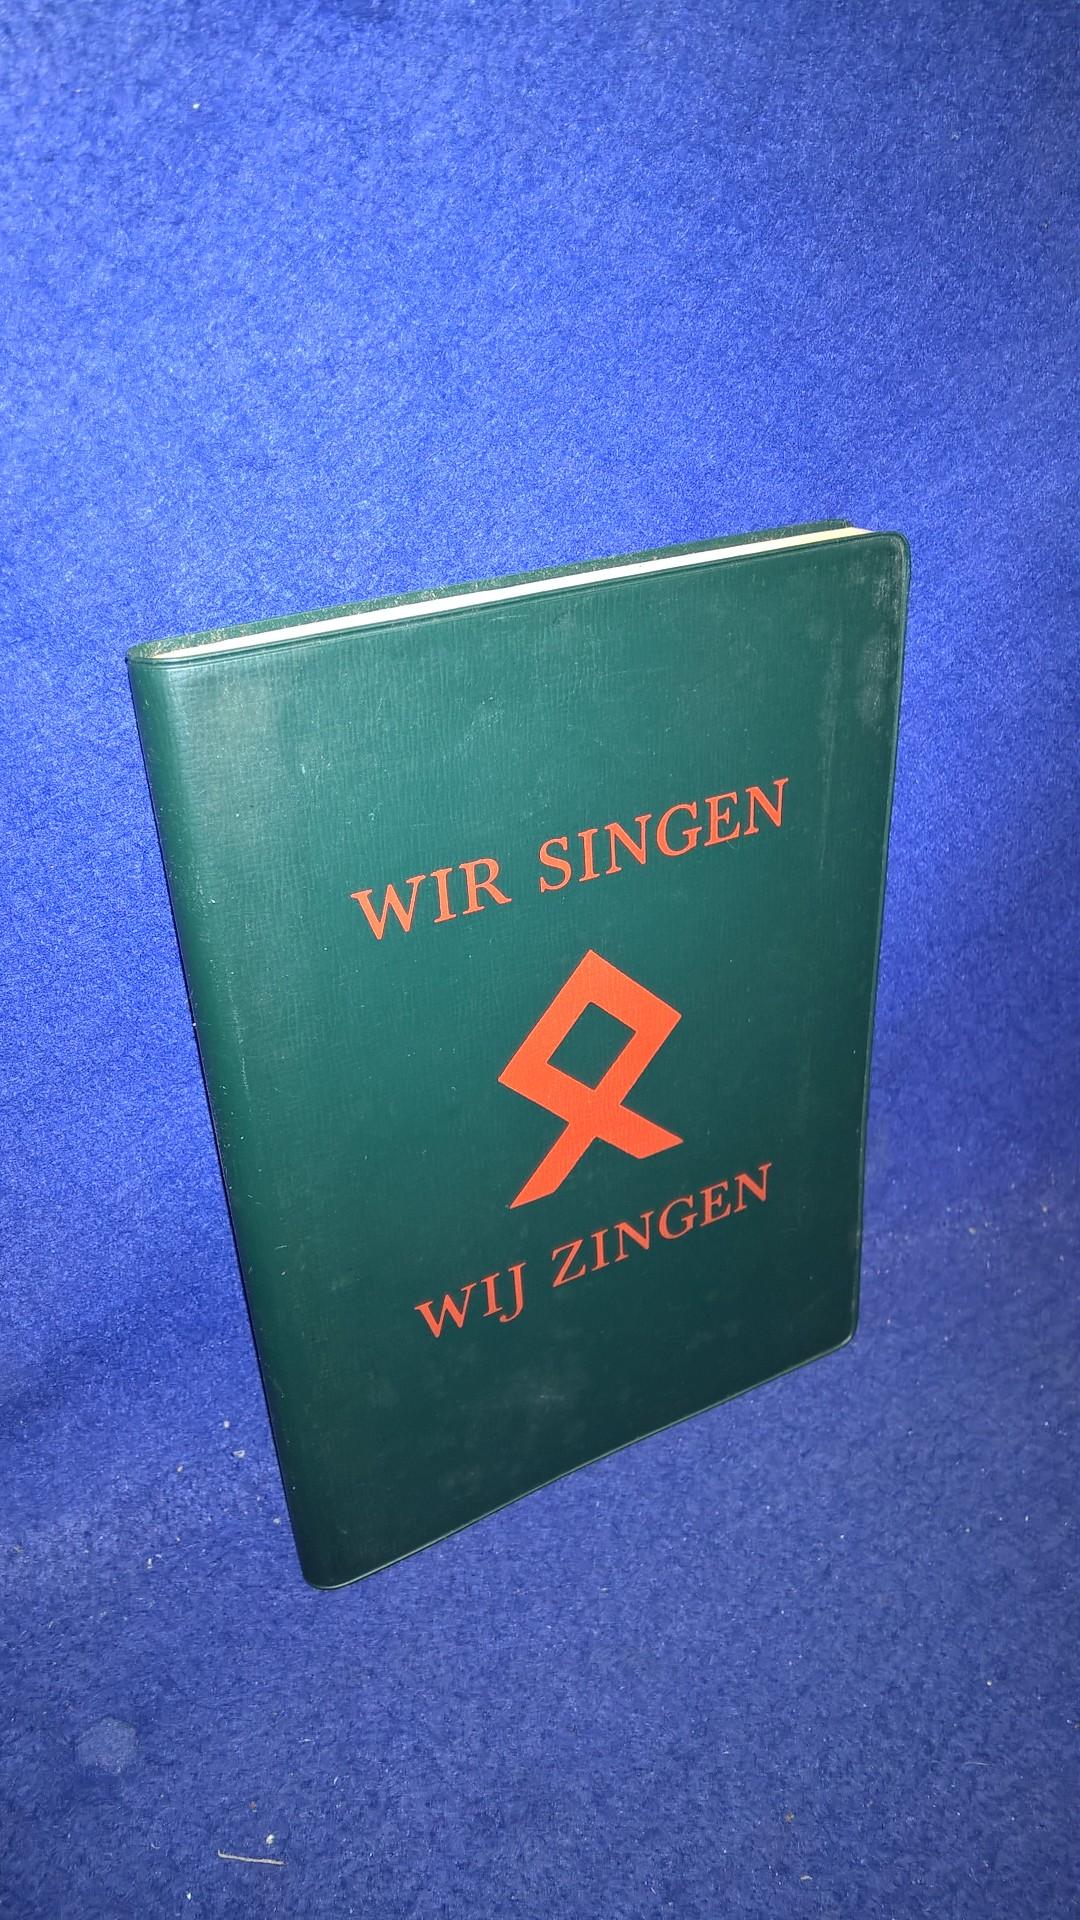 Wir singen - Wij zingen - Liederbuch der deutschen, flämischen und nordländischen Jugend